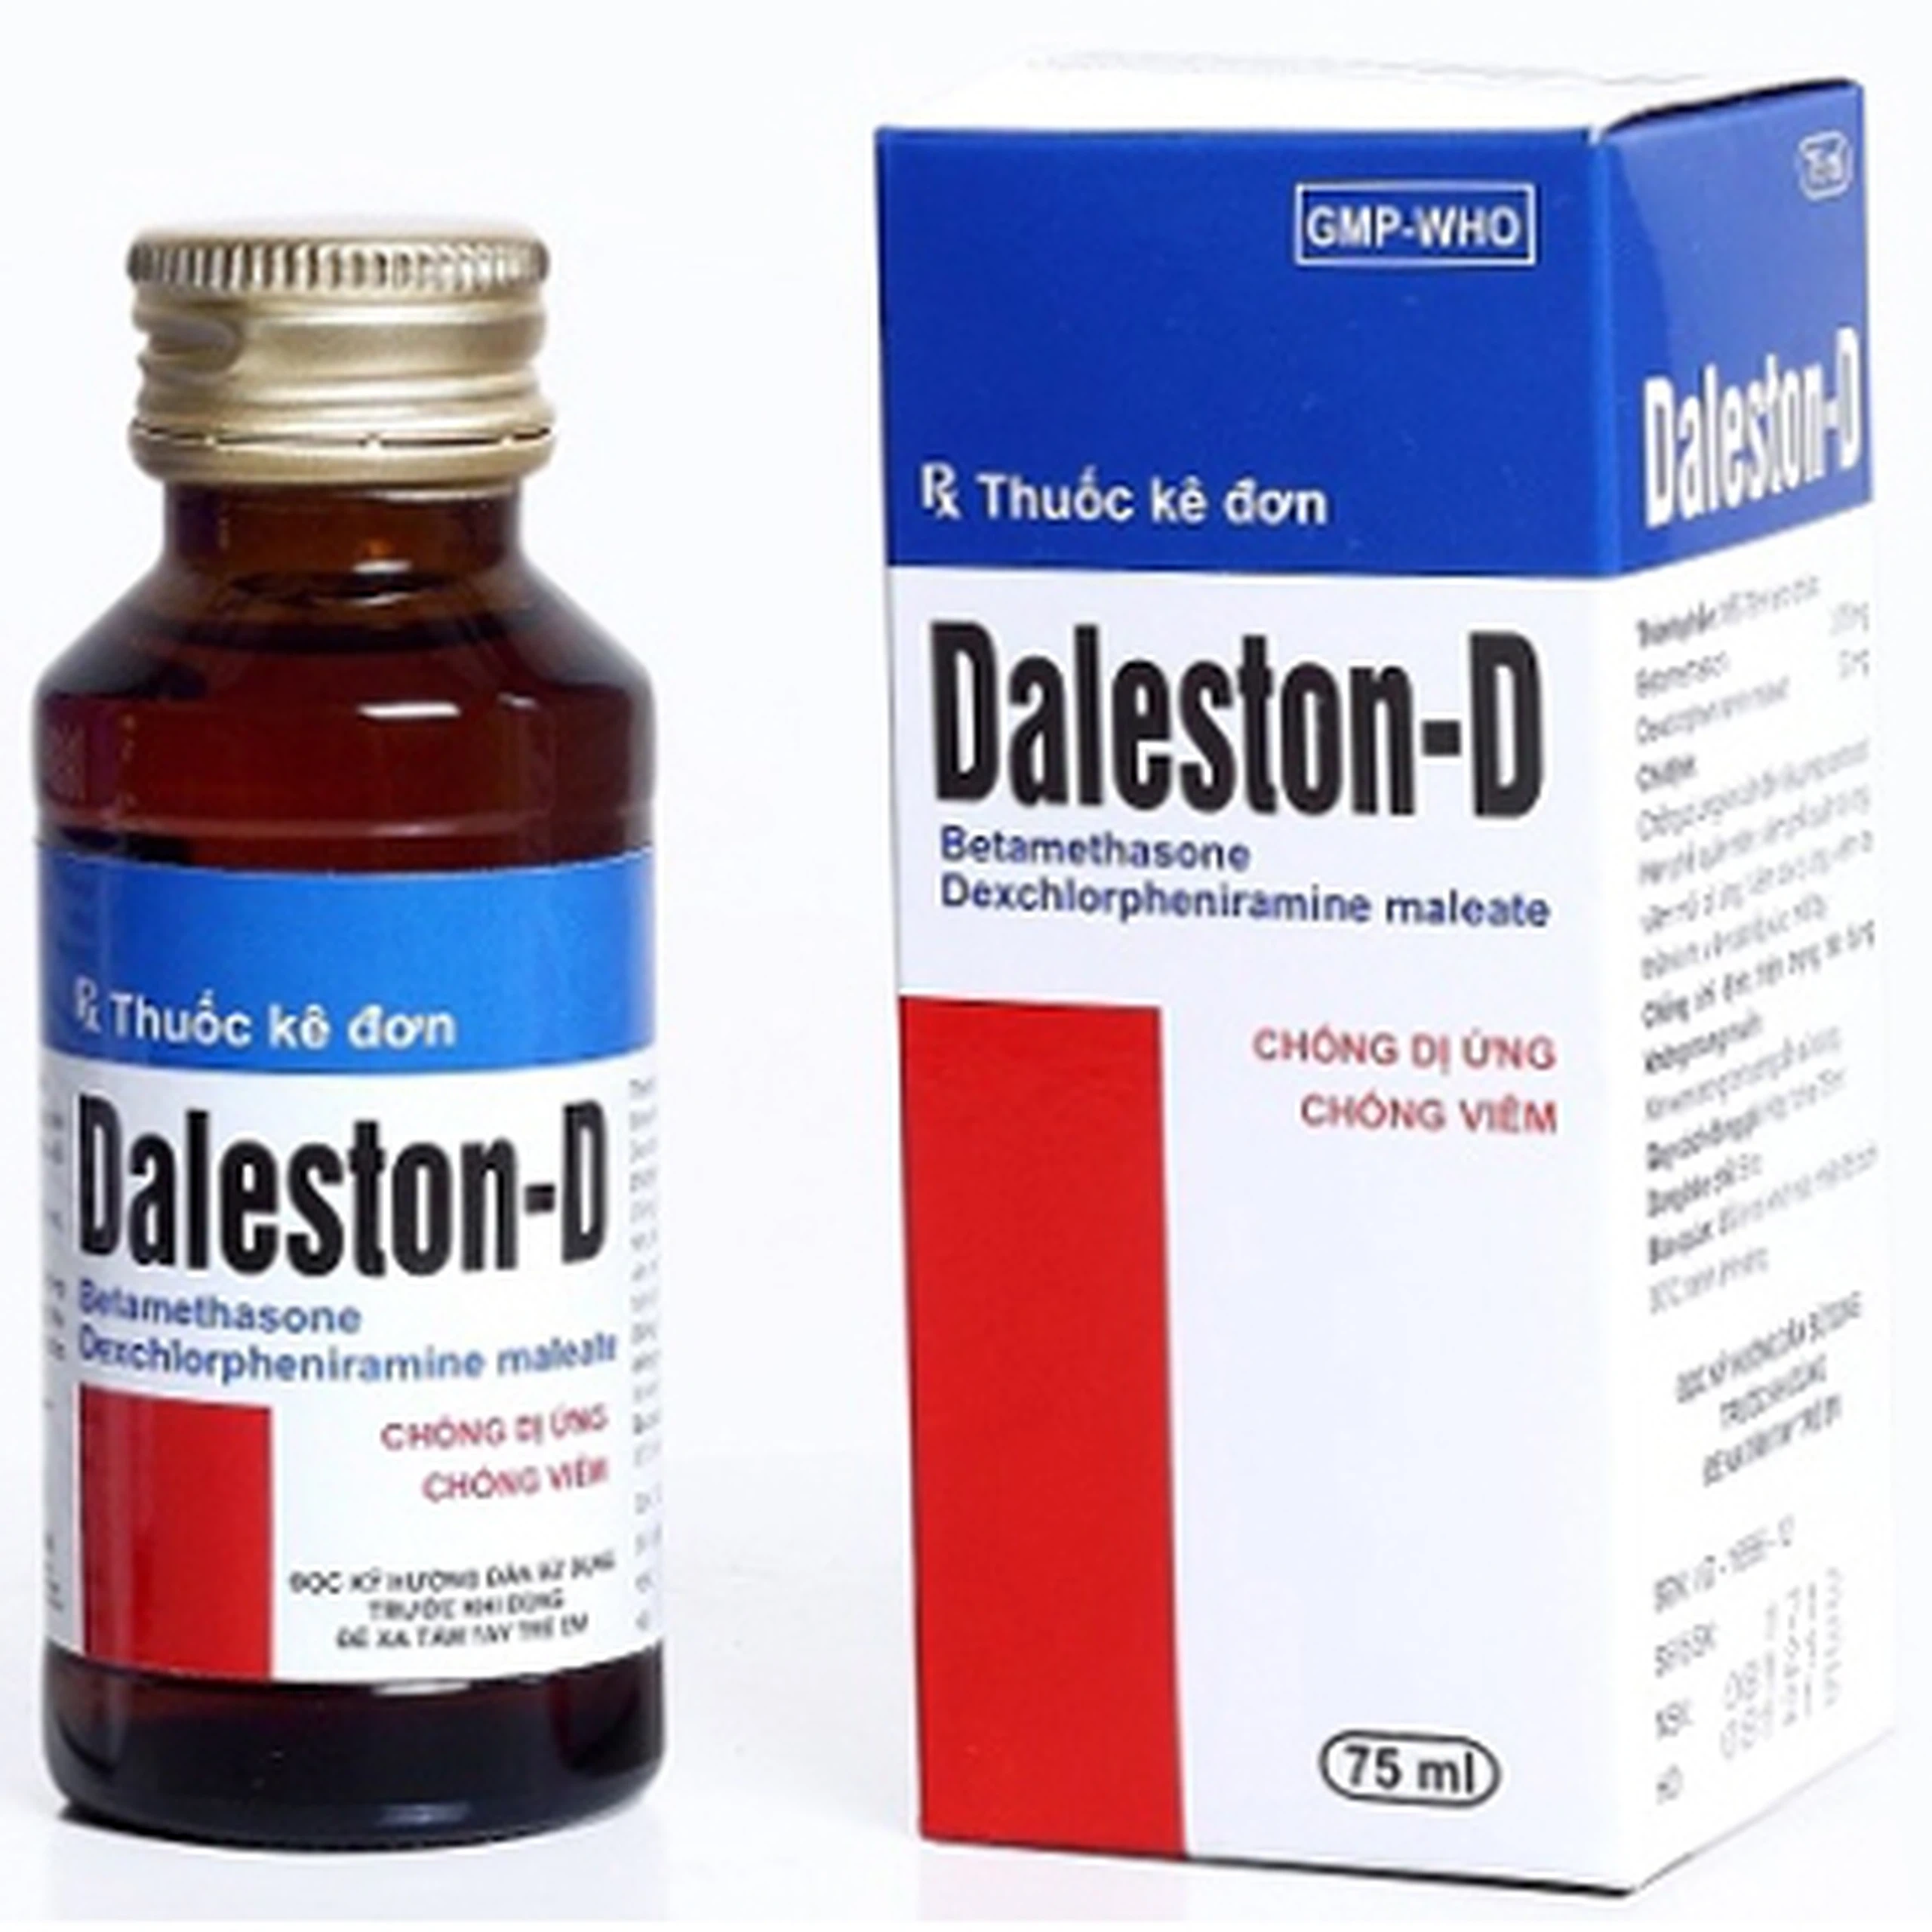 Siro Daleston-D TW3 chống dị ứng, chống viêm (75ml)